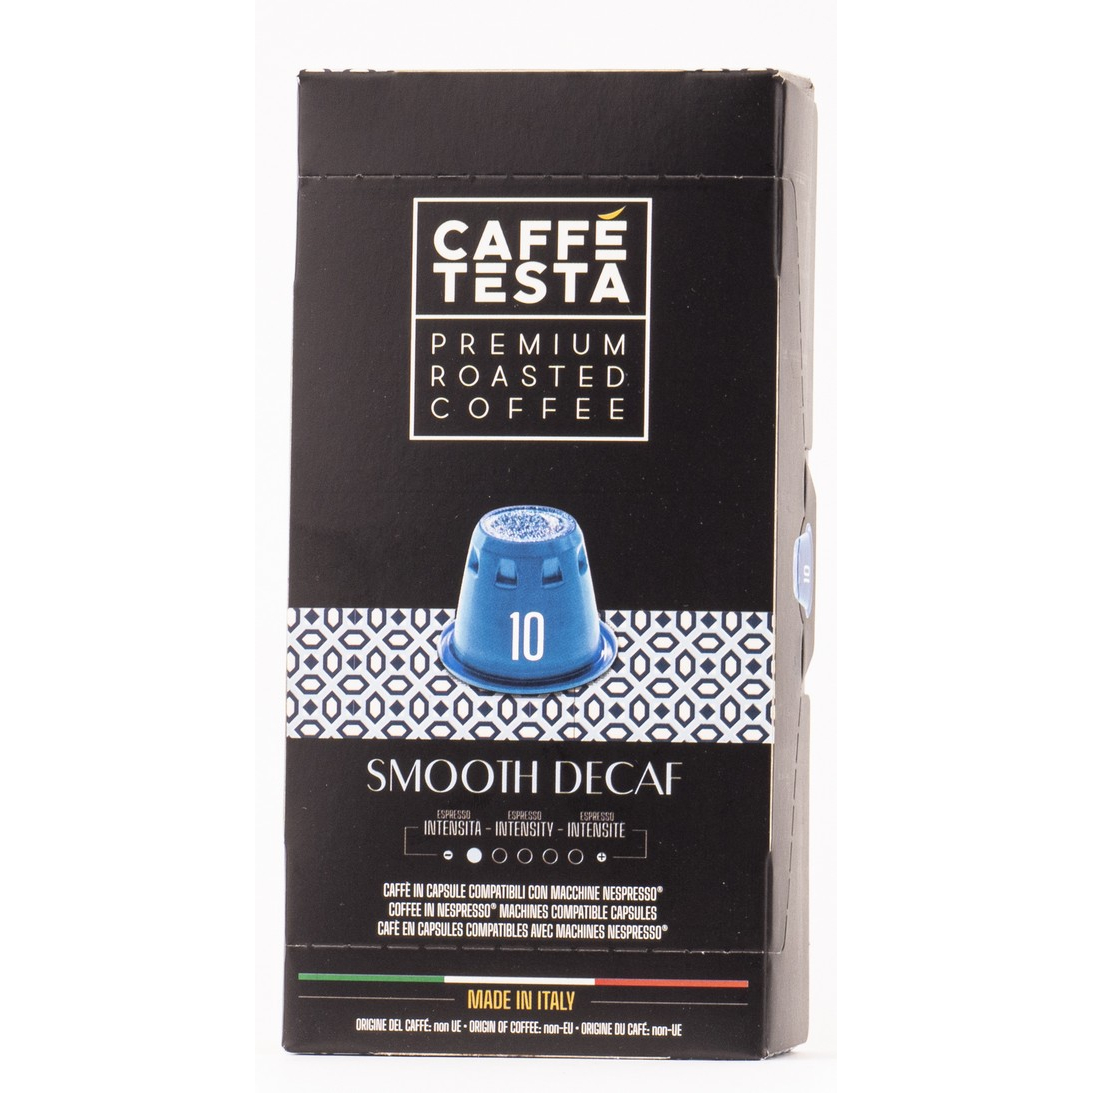 Кофе Caffe Testa Smooth Decaf в капсулах 70/30, 55 г кофе в капсулах diemme caffe spirito del salvador 50 шт